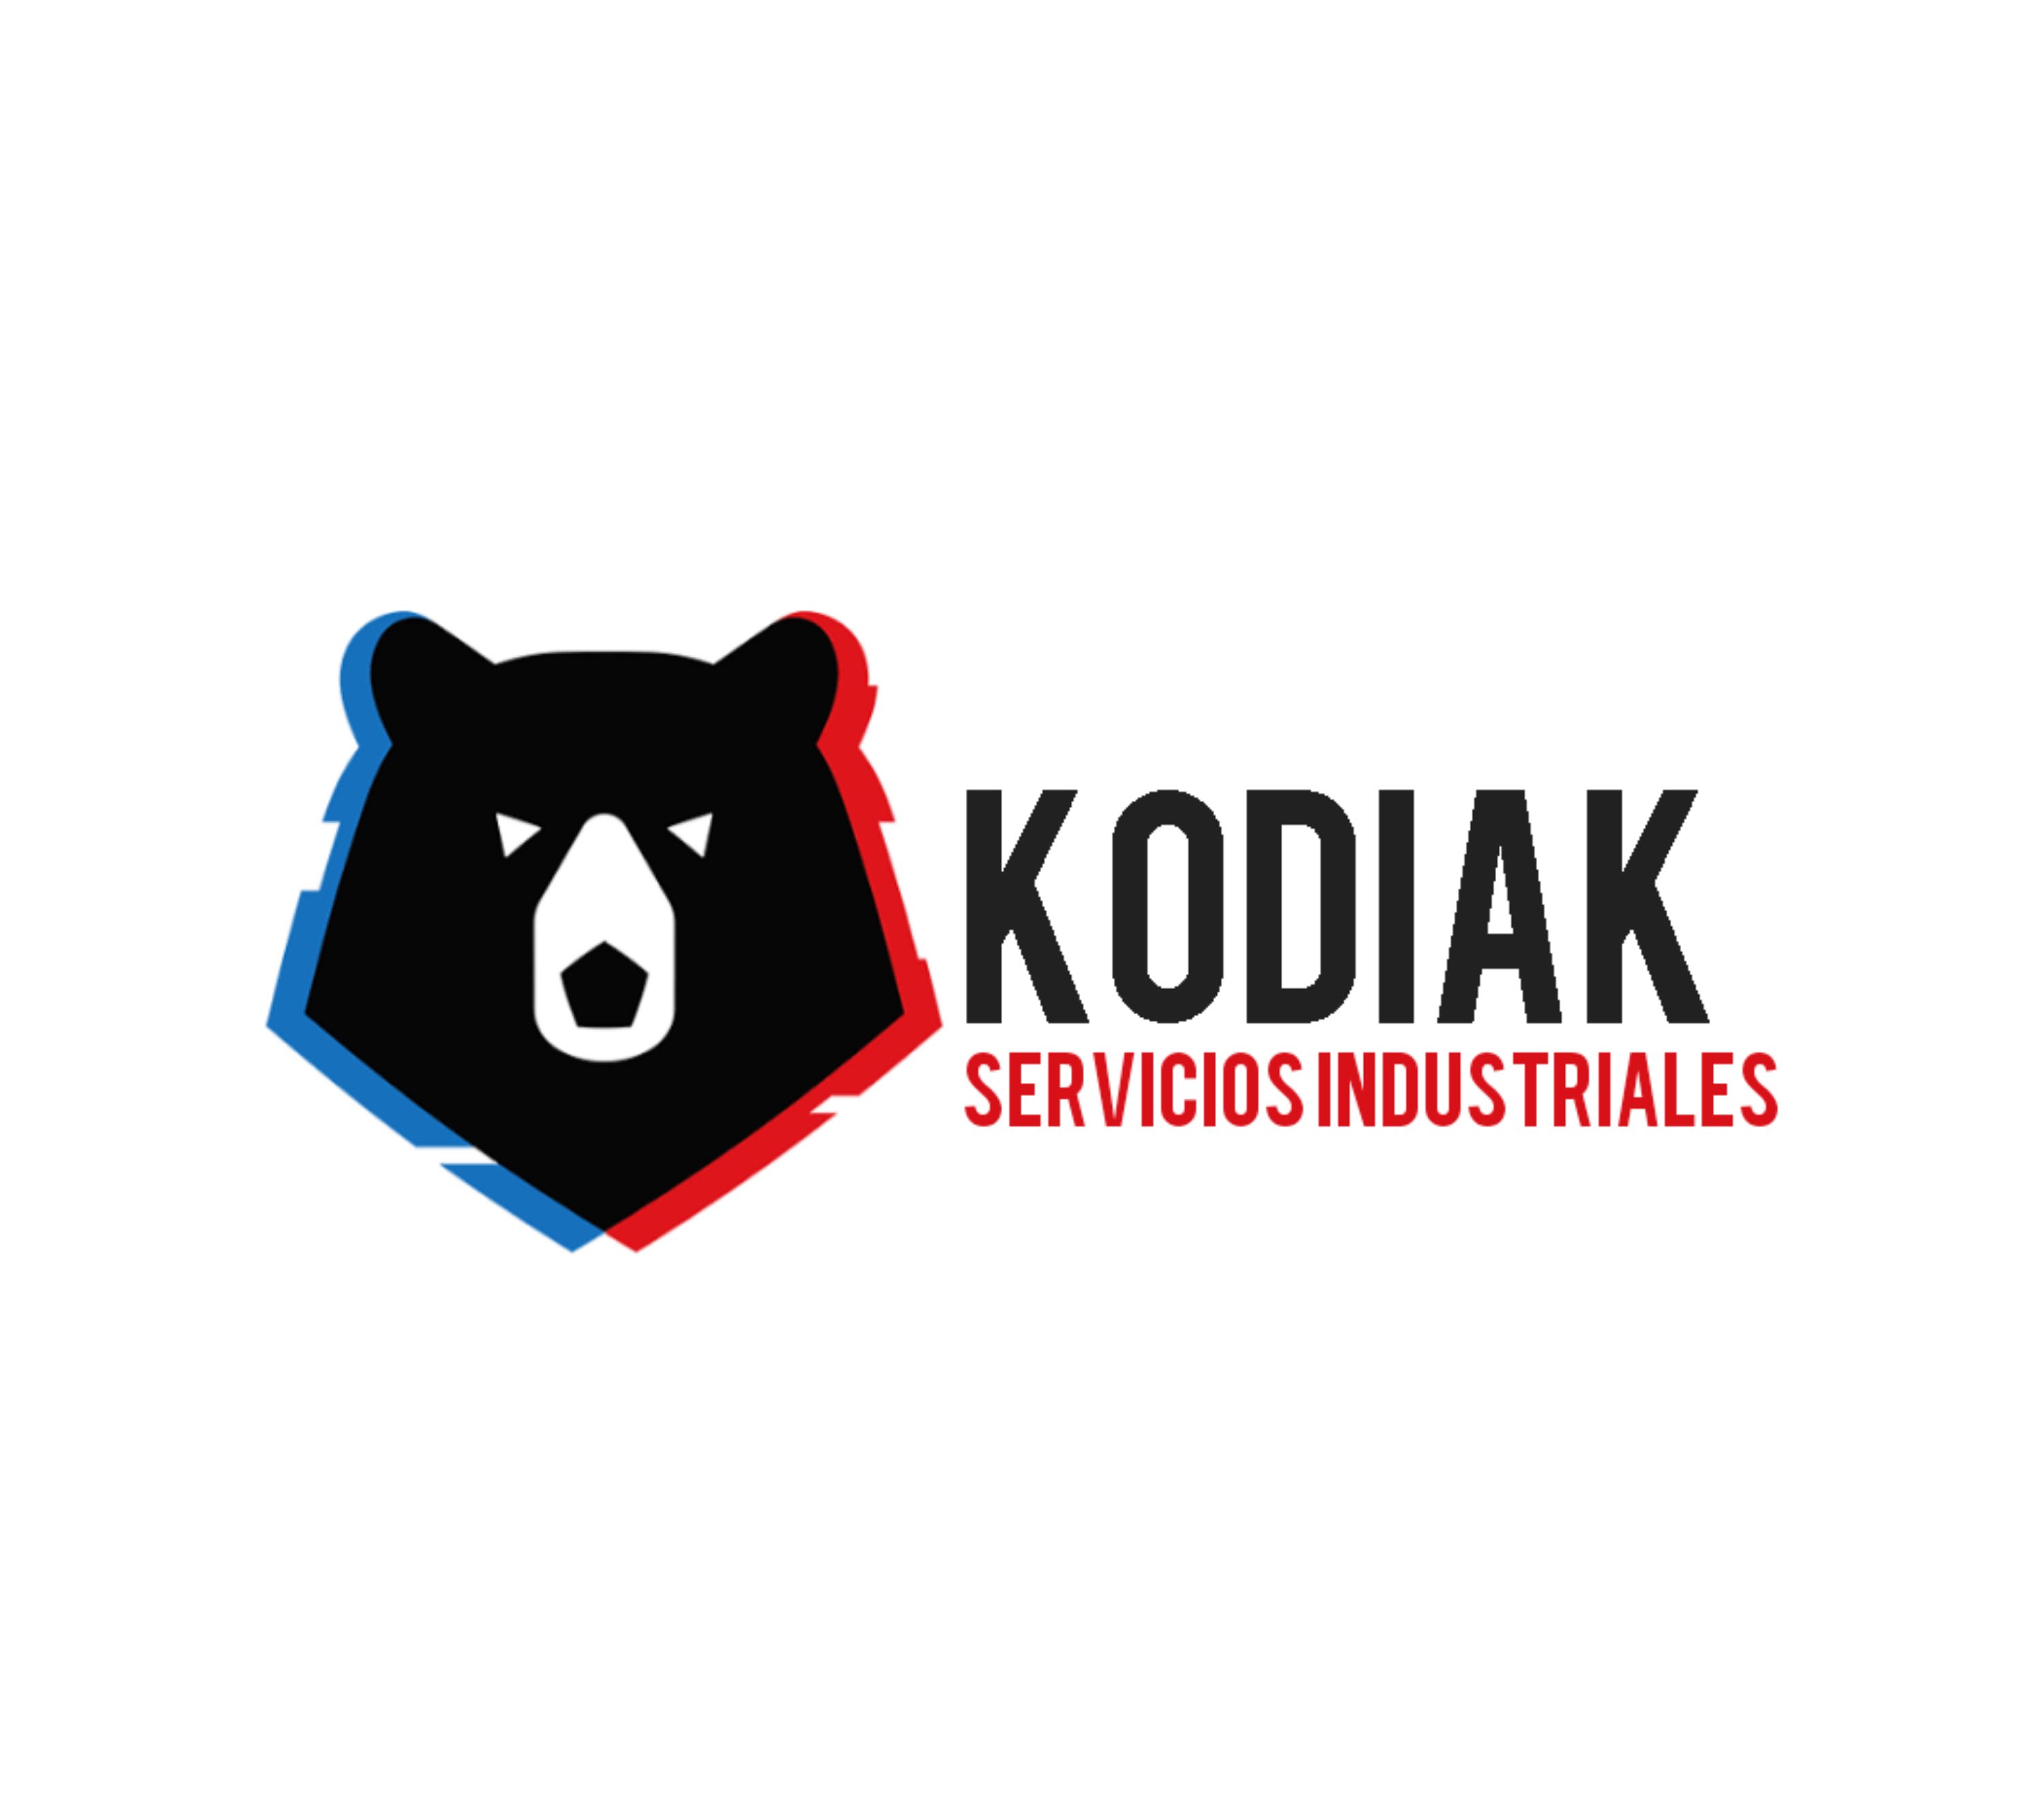 Kodiak Servicios Industriales